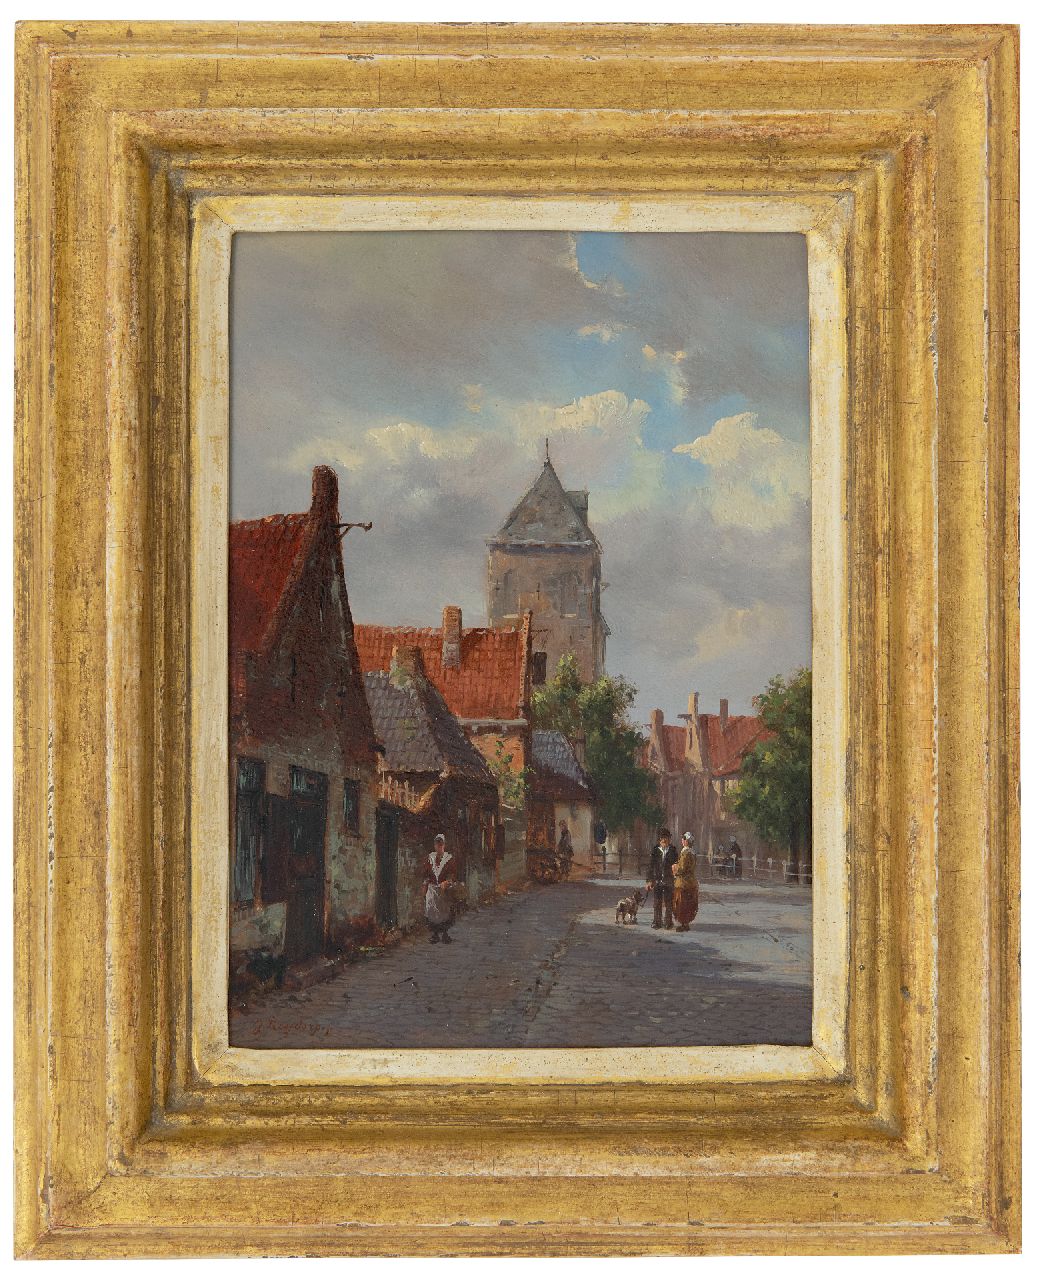 Roosdorp F.  | Frederik Roosdorp | Schilderijen te koop aangeboden | Zonnig straatje, olieverf op paneel 22,0 x 15,8 cm, gesigneerd linksonder